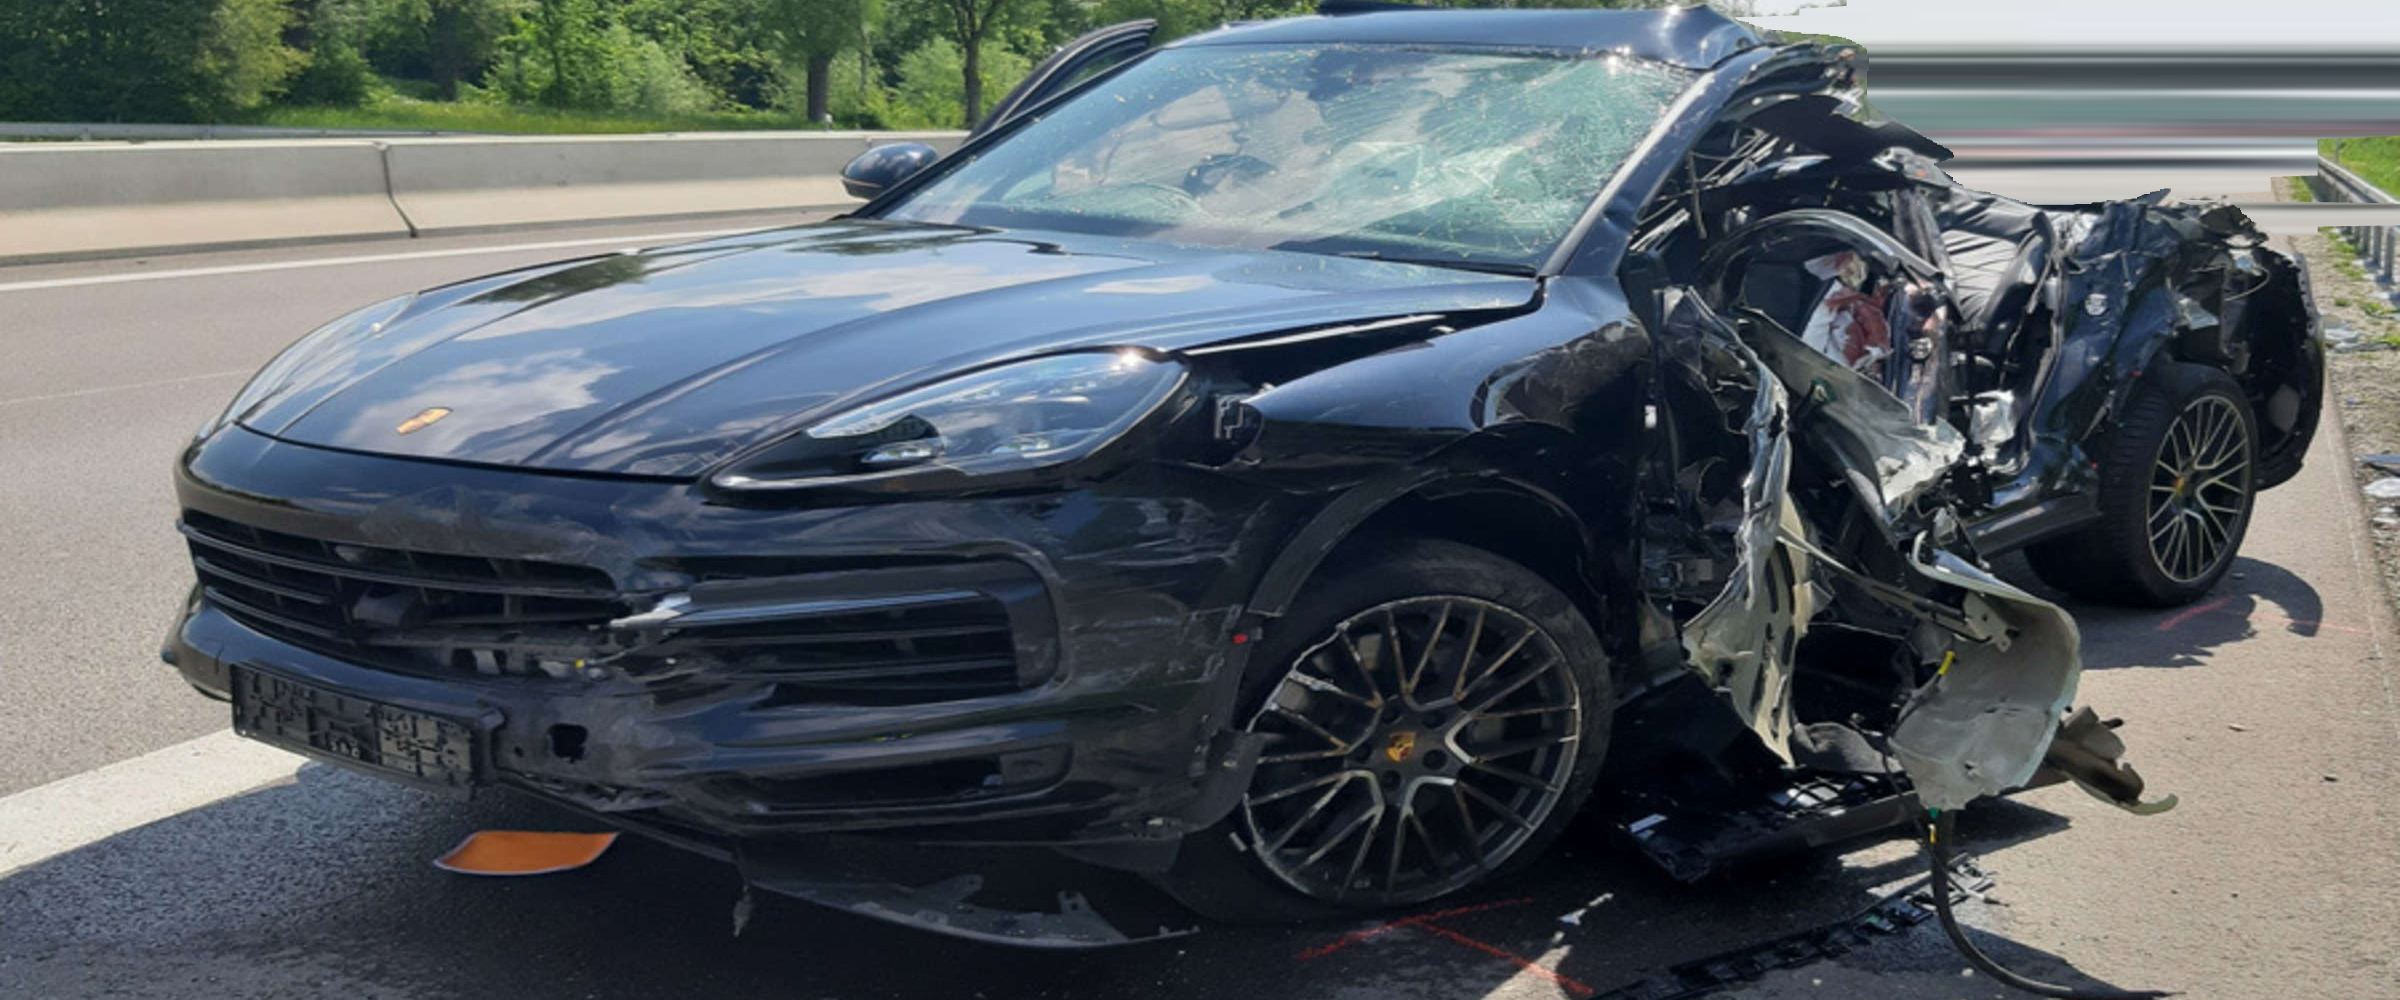 Porsche Unfall Neuwagen Autobahn 2 Höhere Unfallgefahr durch teilautonomes Autofahren!